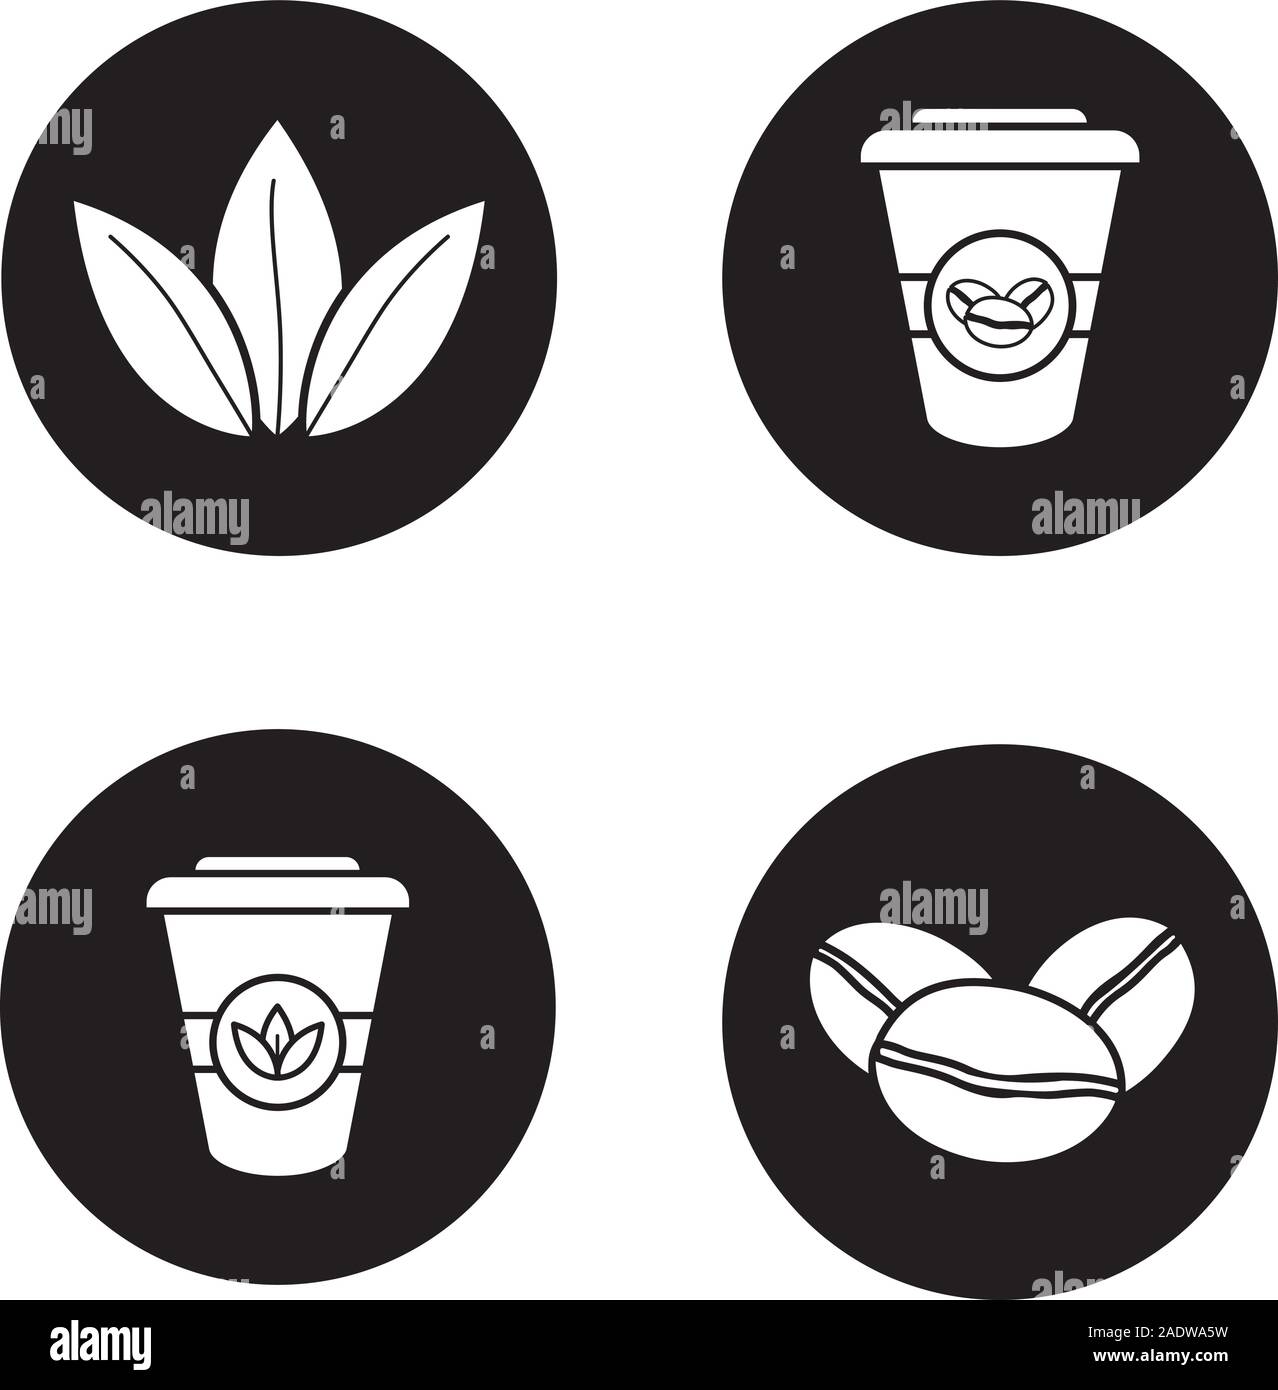 Caffè e tè set di icone. Caffè torrefatto in grani, foglie di tè e di carta monouso tazze. Vettore silhouette bianca illustrazioni di cerchi neri Illustrazione Vettoriale